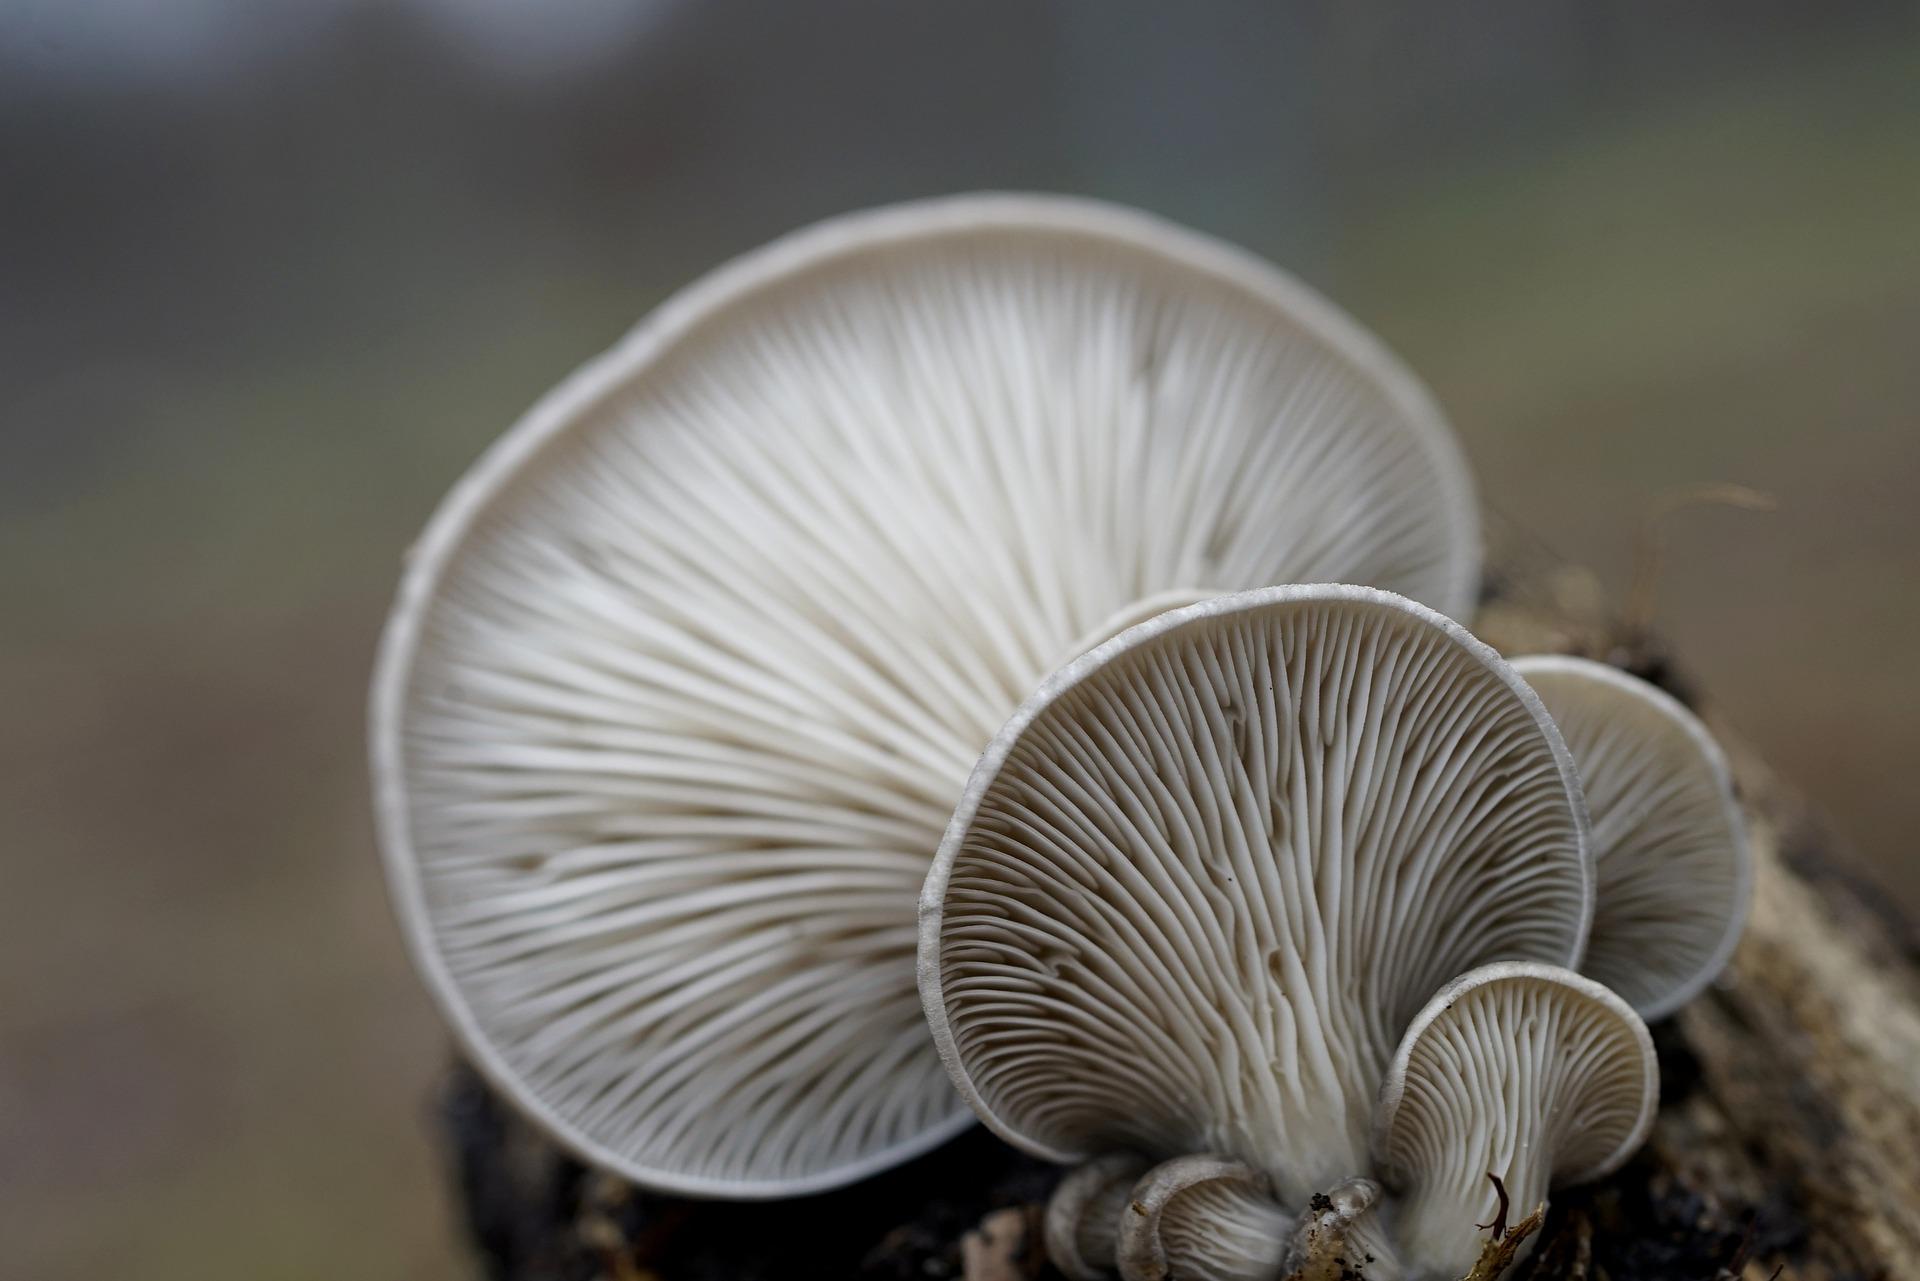 uploads/images/Oyster Mushrooms 7742902_1920